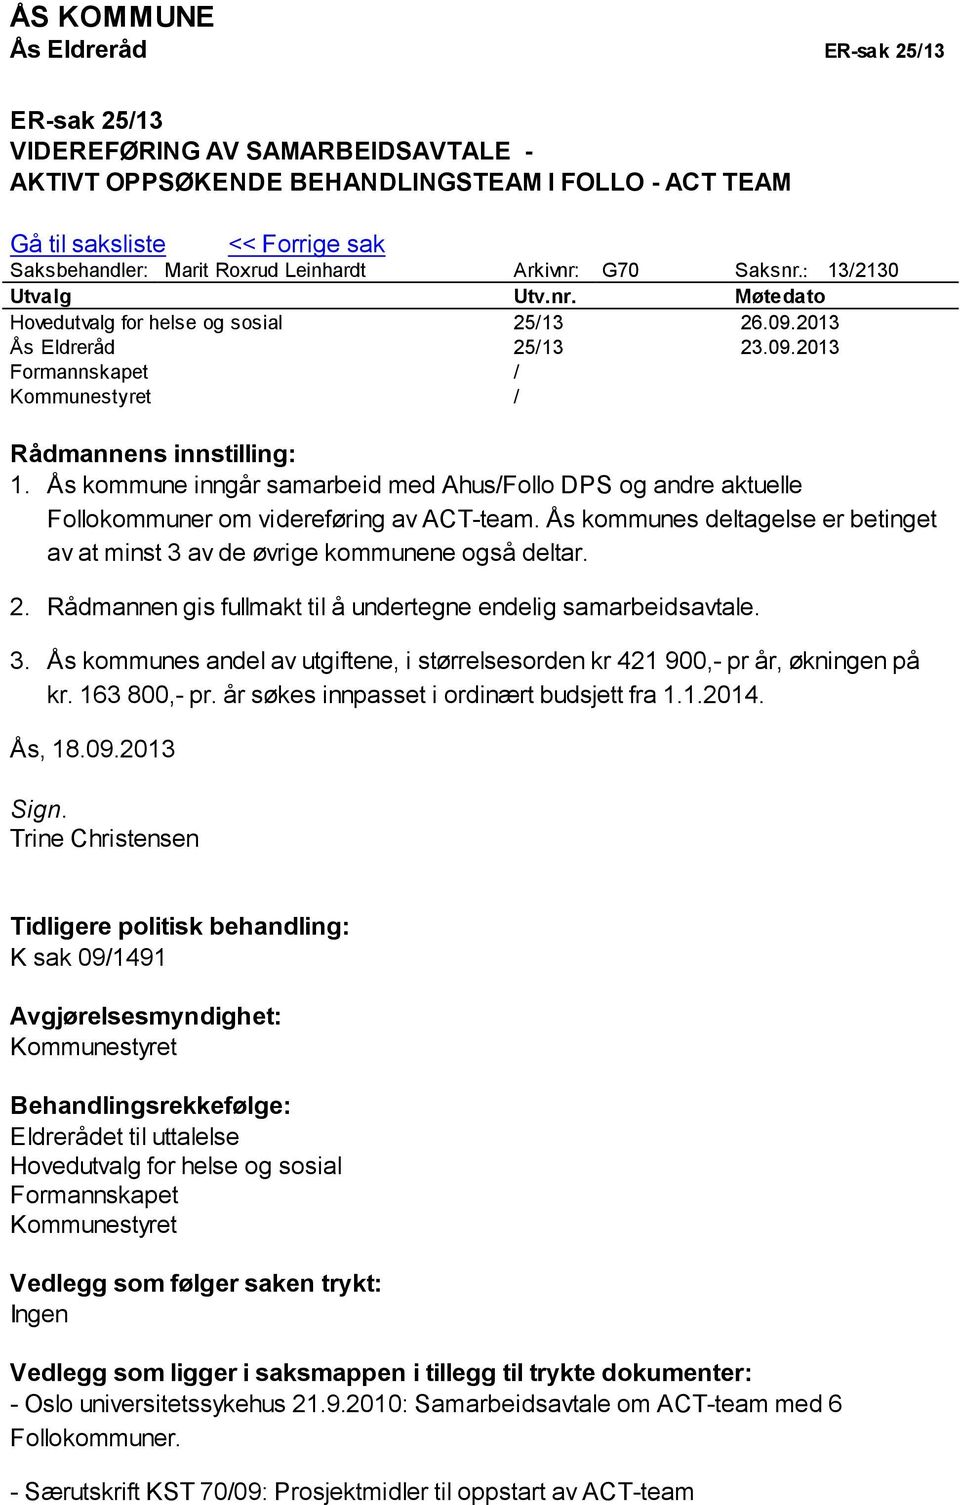 Ås kommune inngår samarbeid med Ahus/Follo DPS og andre aktuelle Follokommuner om videreføring av ACT-team. Ås kommunes deltagelse er betinget av at minst 3 av de øvrige kommunene også deltar. 2.